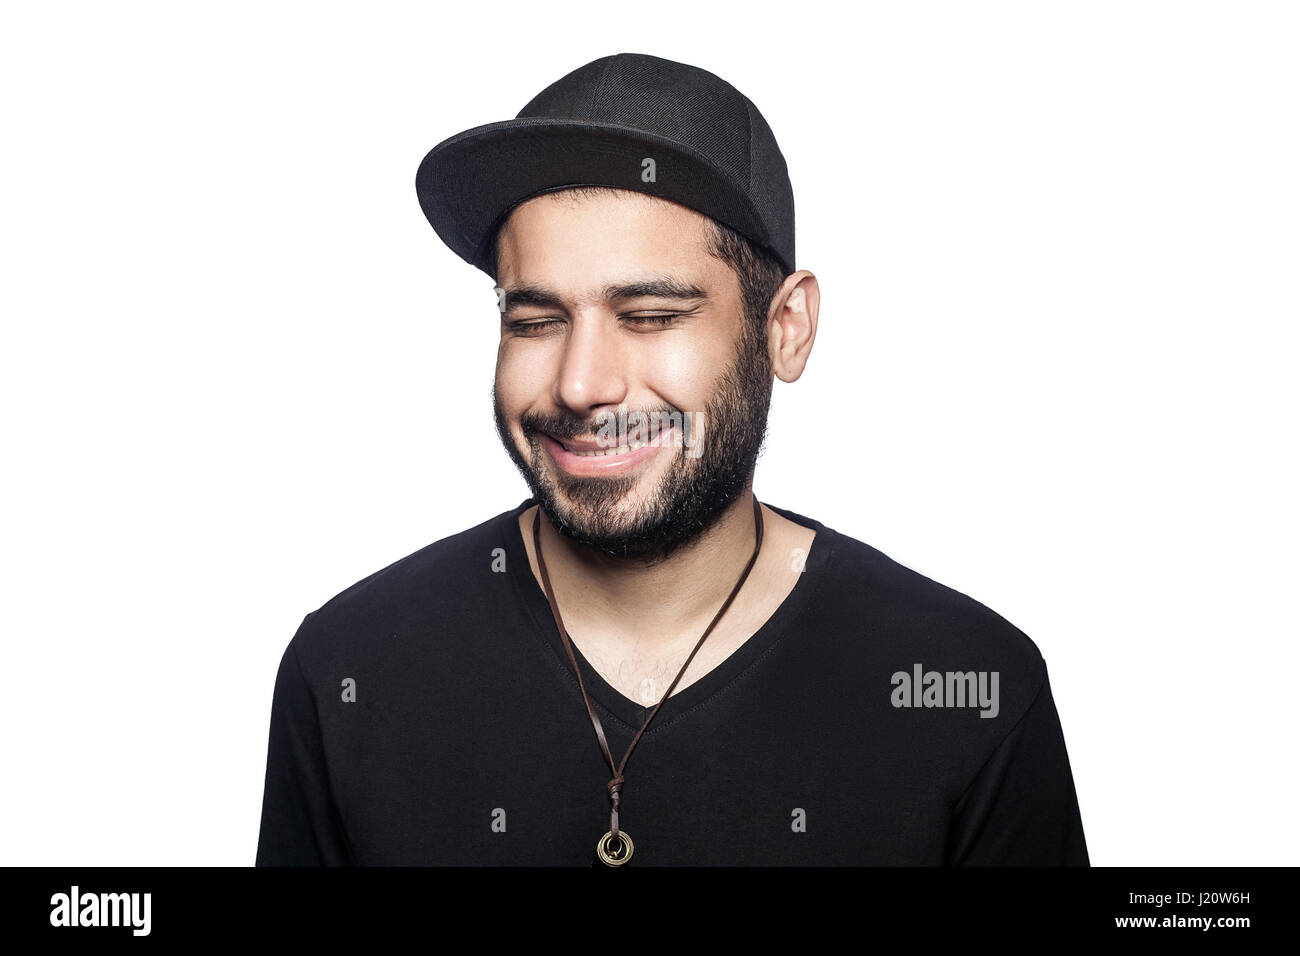 Ritratto di giovane felice smilely uomo con t-shirt nera e cappuccio con gli occhi chiusi e sorriso toothy. studio shot, isolato su sfondo bianco. Foto Stock